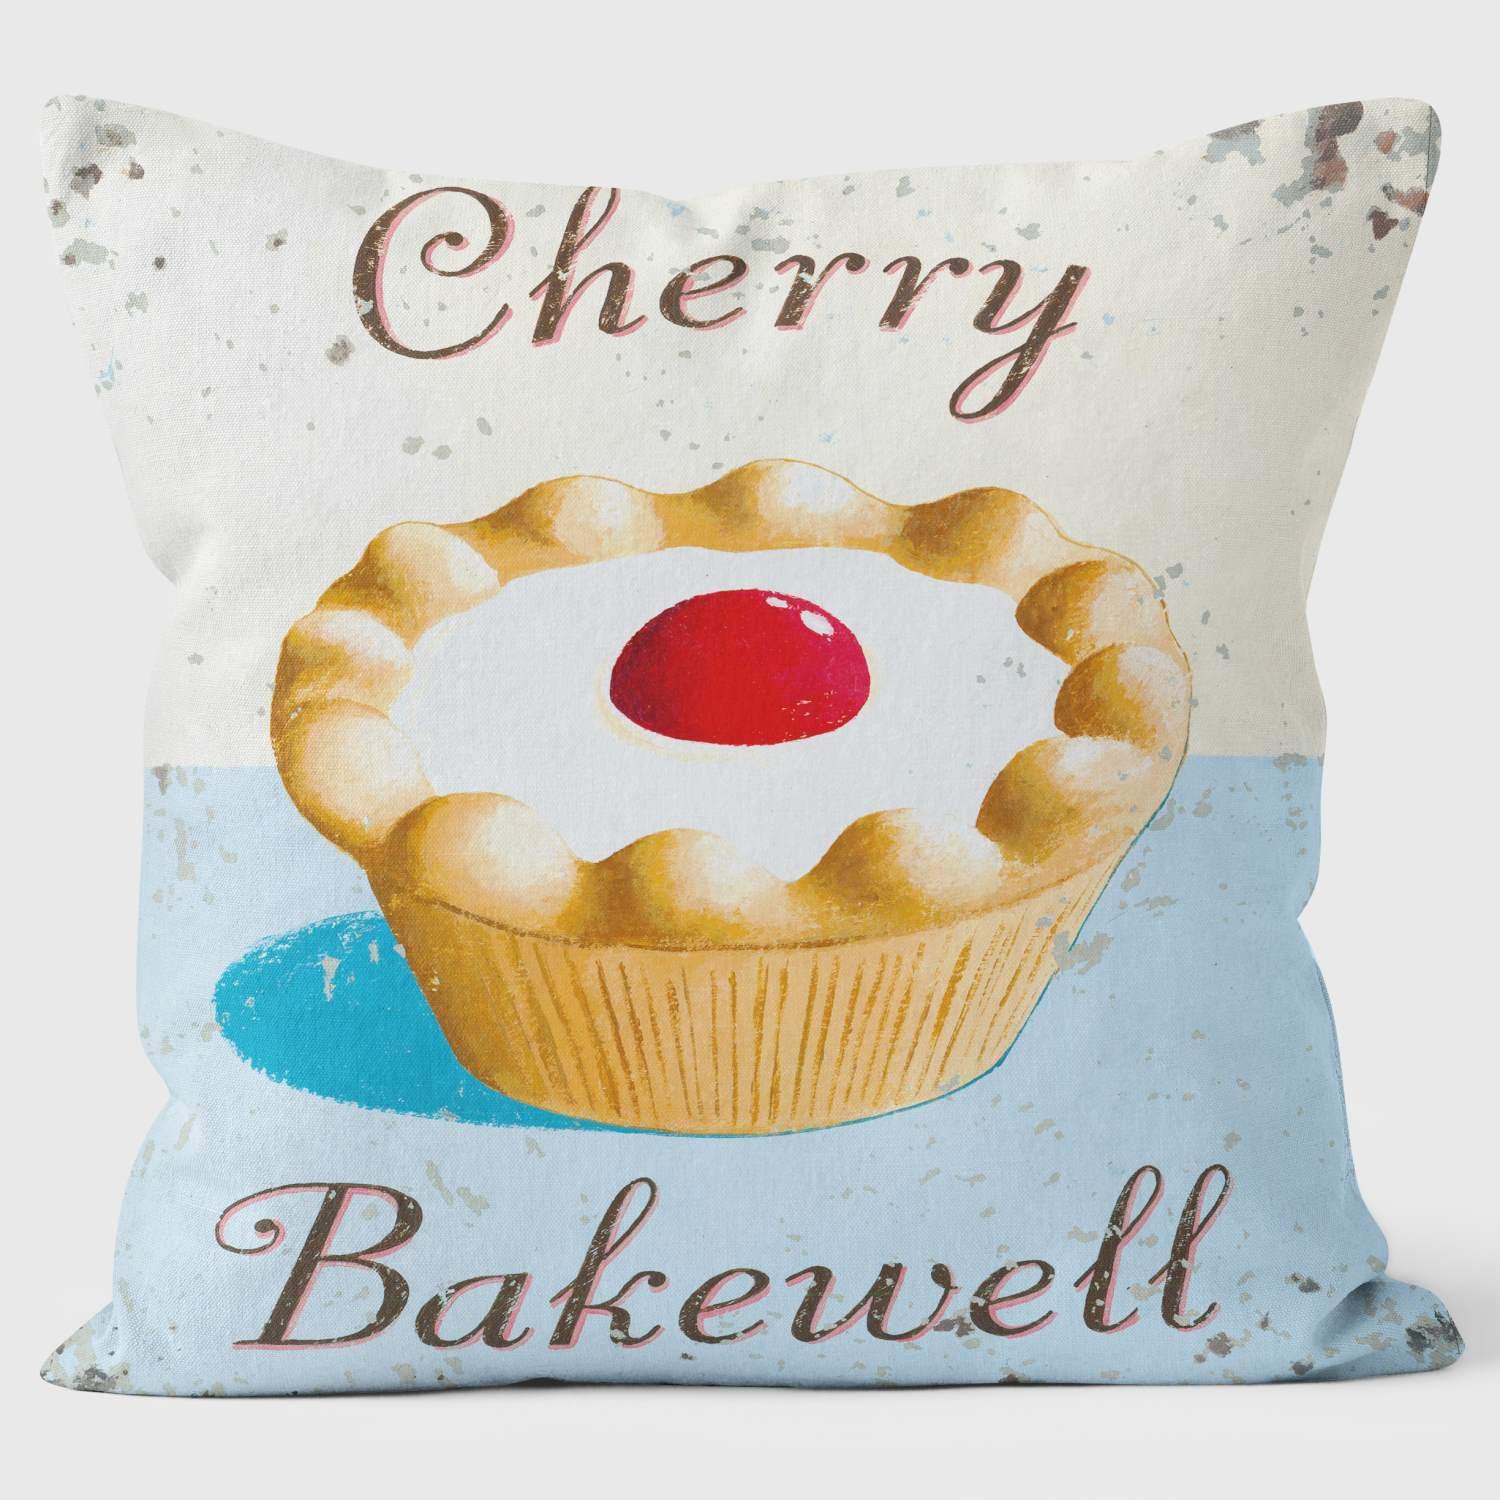 Cherry Bakewell - Martin Wiscombe - Art Print Cushion - Handmade Cushions UK - WeLoveCushions